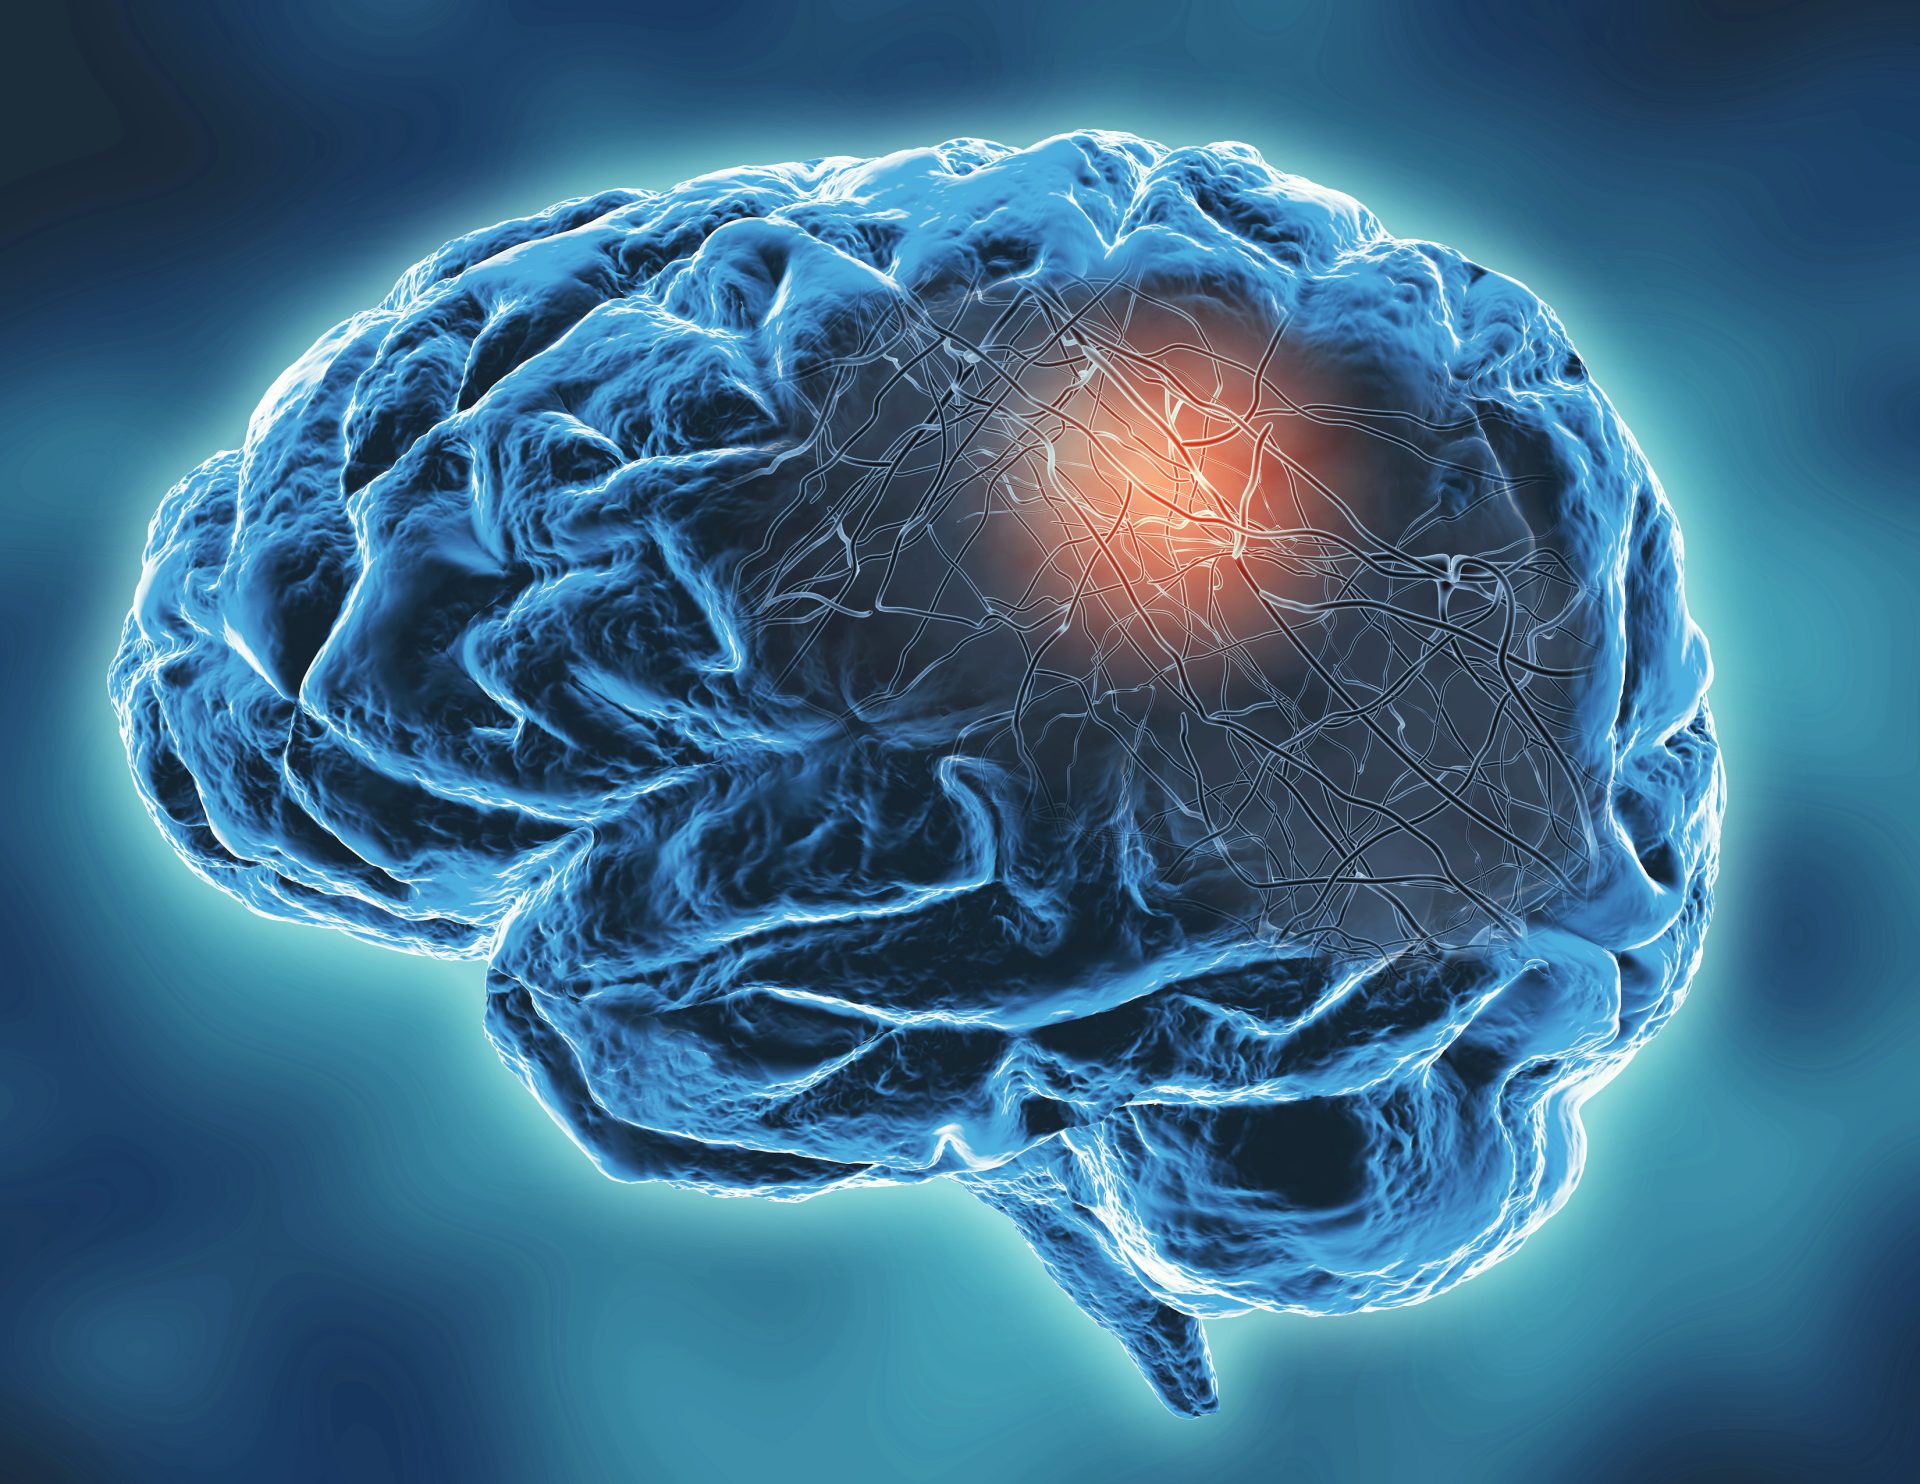 أجرى الباحثون أيضًا قياسات لنشاط دماغ الموضوعات في حالة راحة باستخدام تخطيط كهرباء المخ